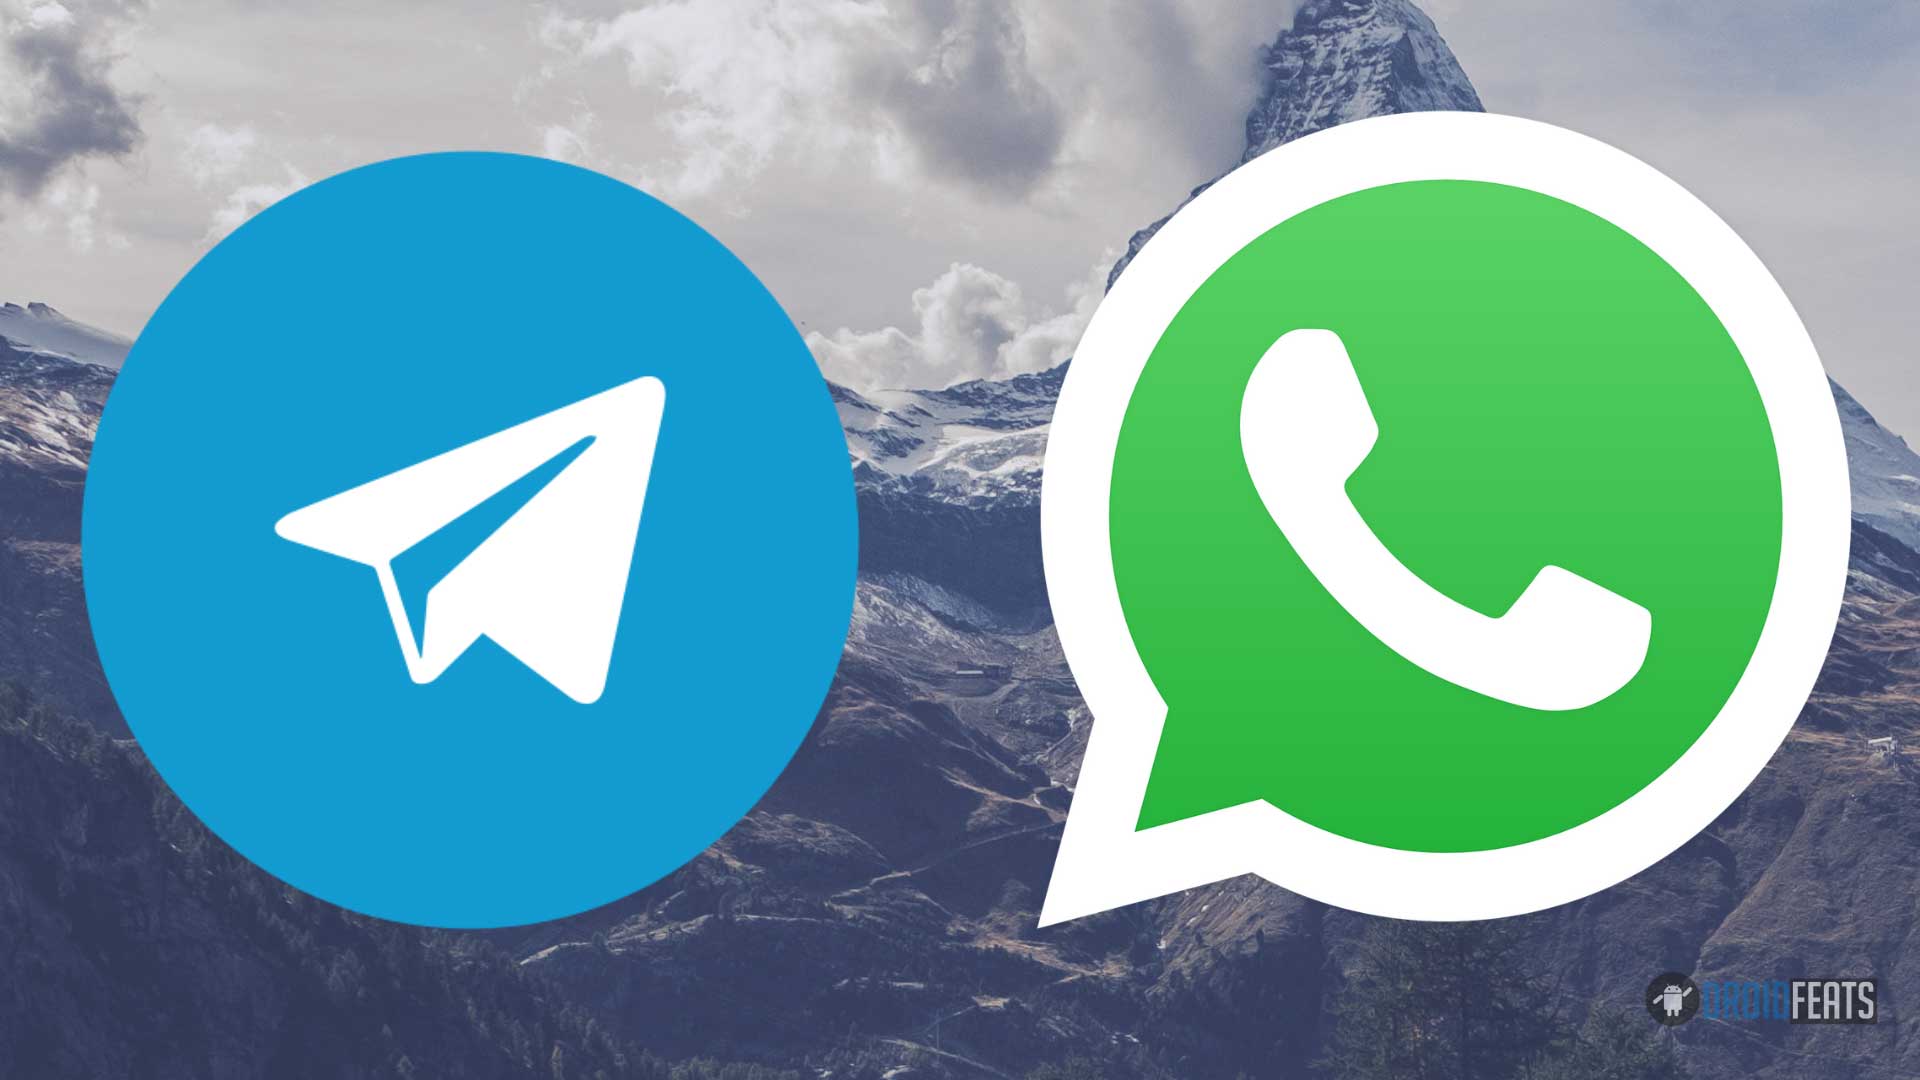 Import Telegram sticker packs to WhatsApp